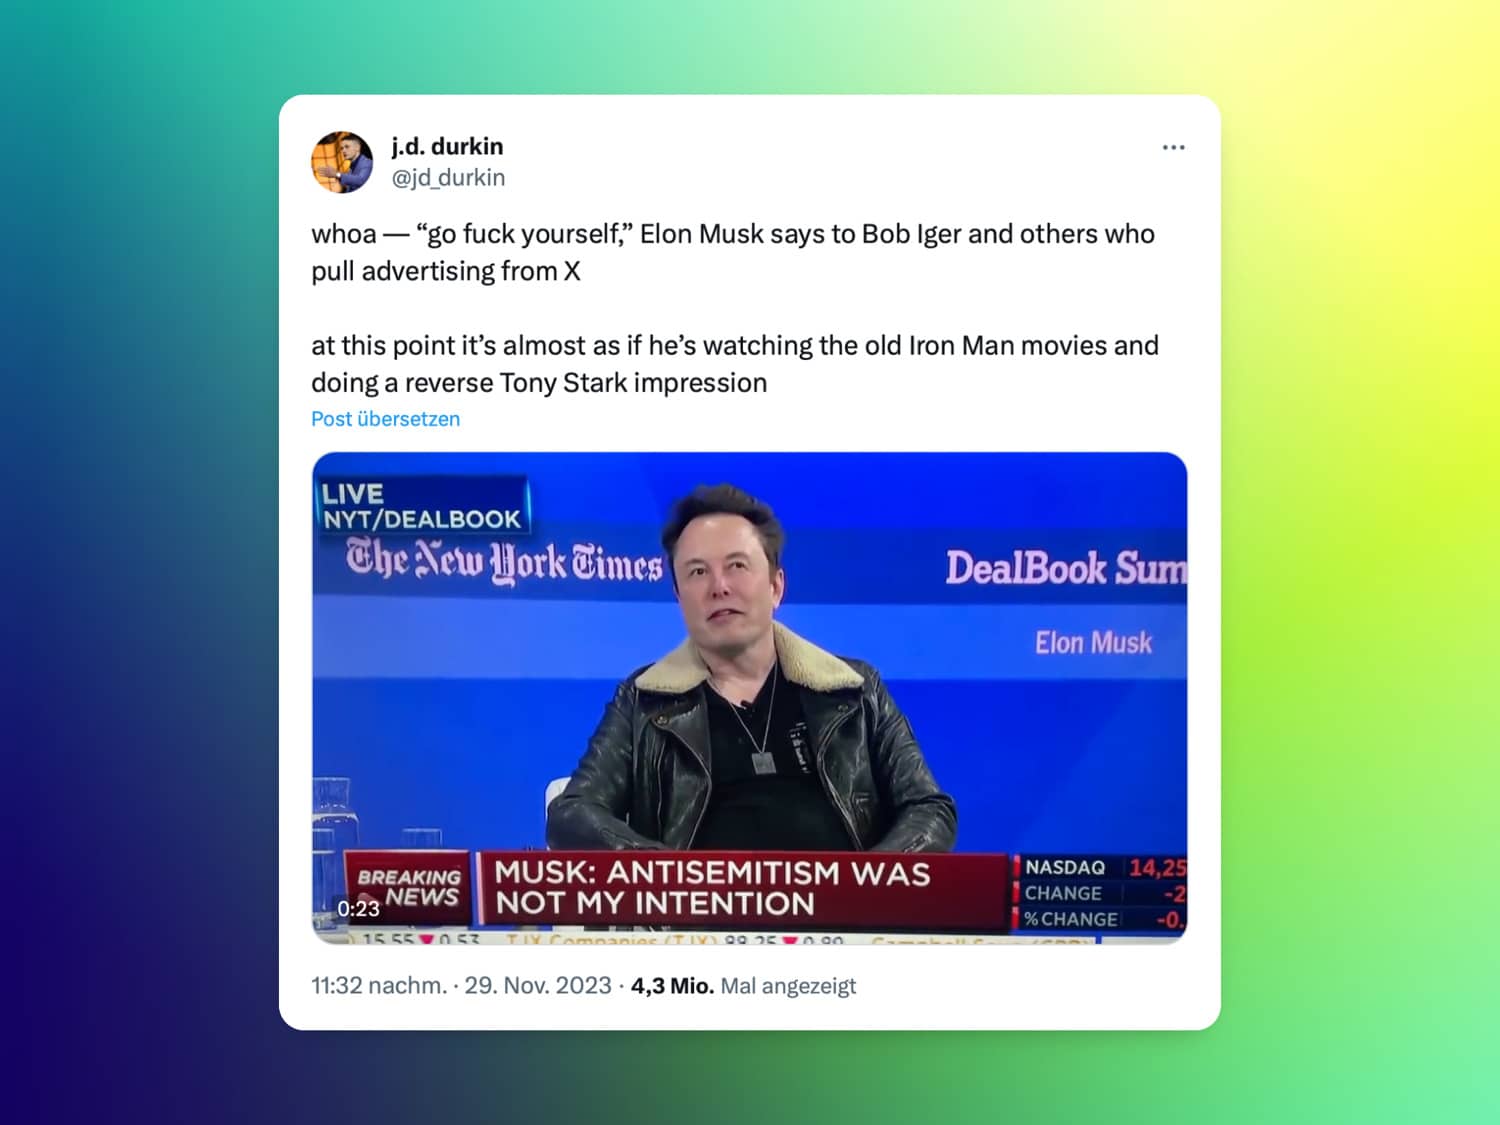 Twitter/X-Post zu Elon Musks Beleidigung gegenüber Werbekundschaft